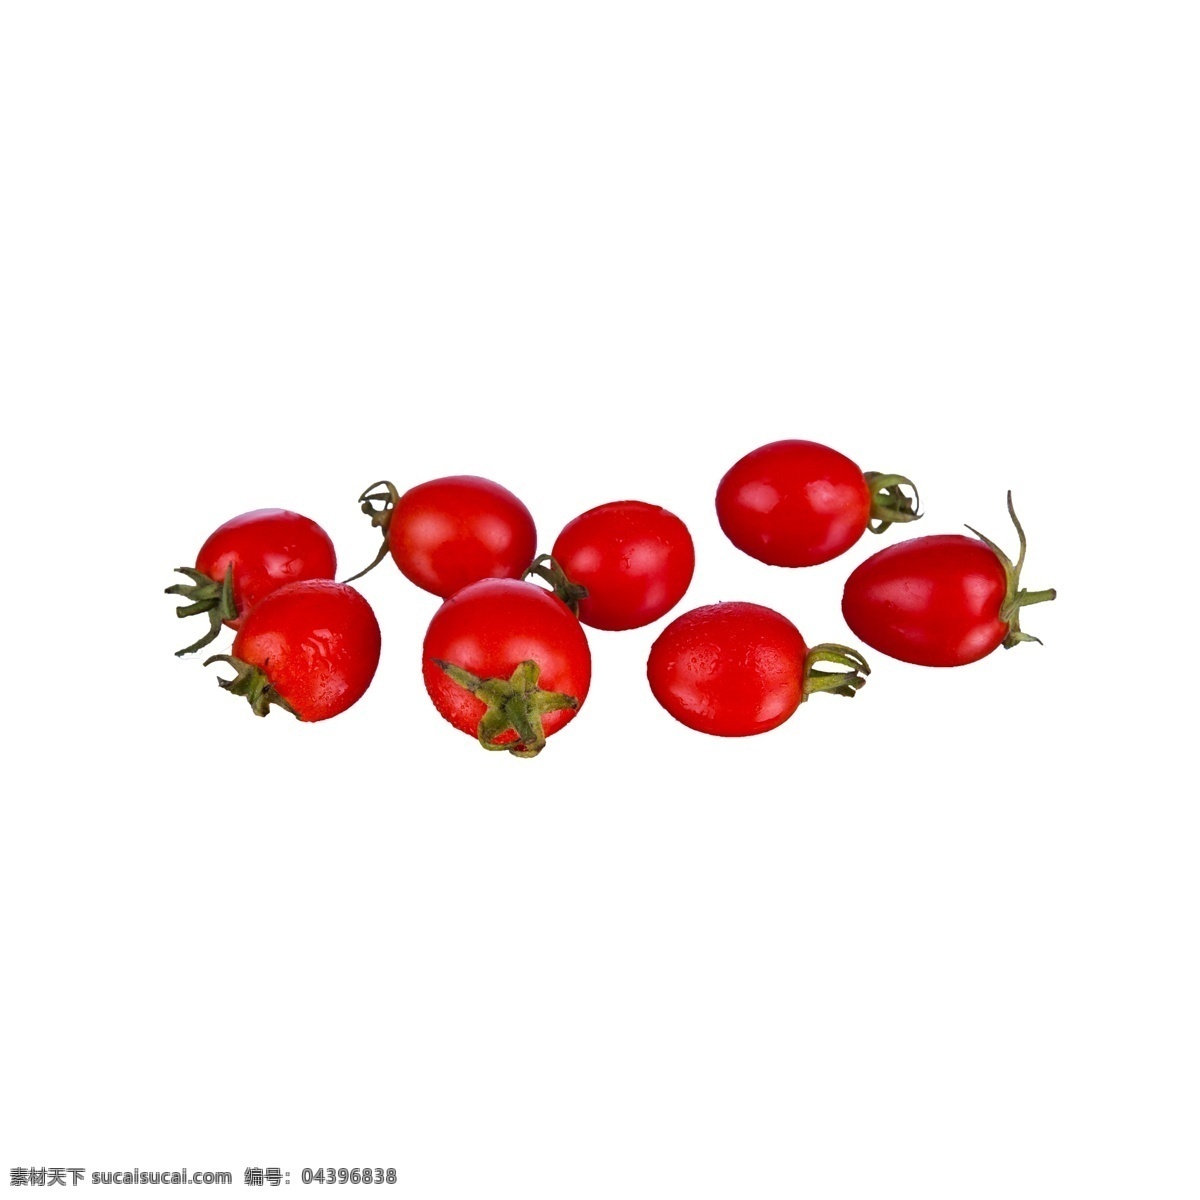 小 番茄 免 抠 小番茄 小番茄免抠 营养 蔬菜 新鲜 红色 植物 实物拍摄 摆拍 绿色叶子 酸甜